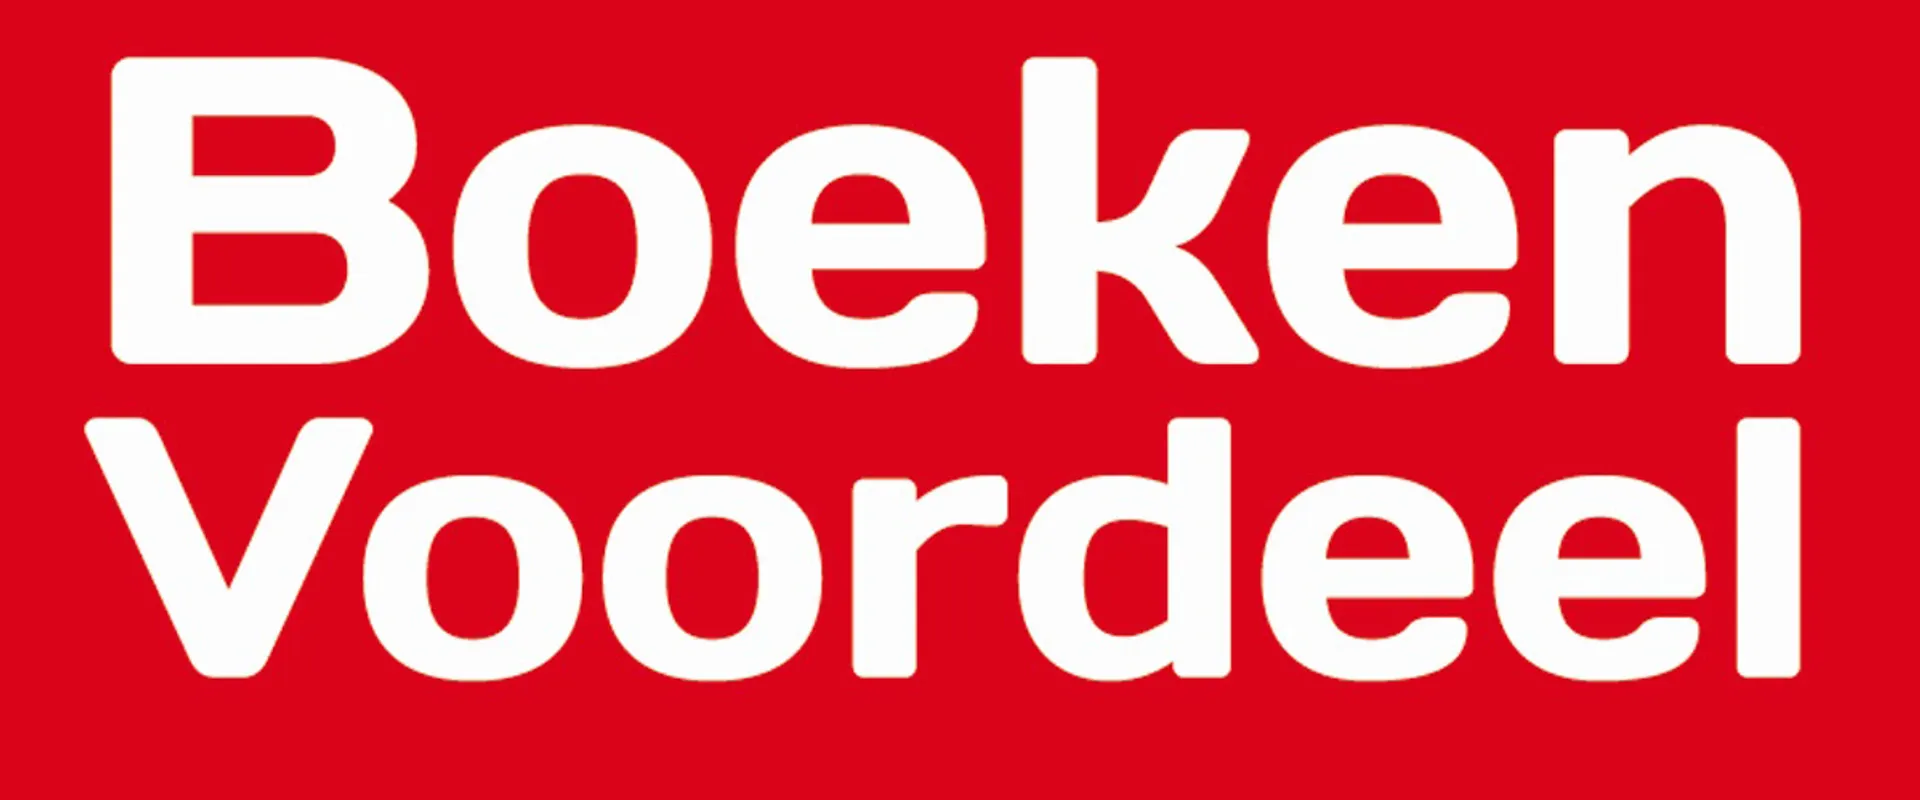 BOEKENVOORDEEL logo